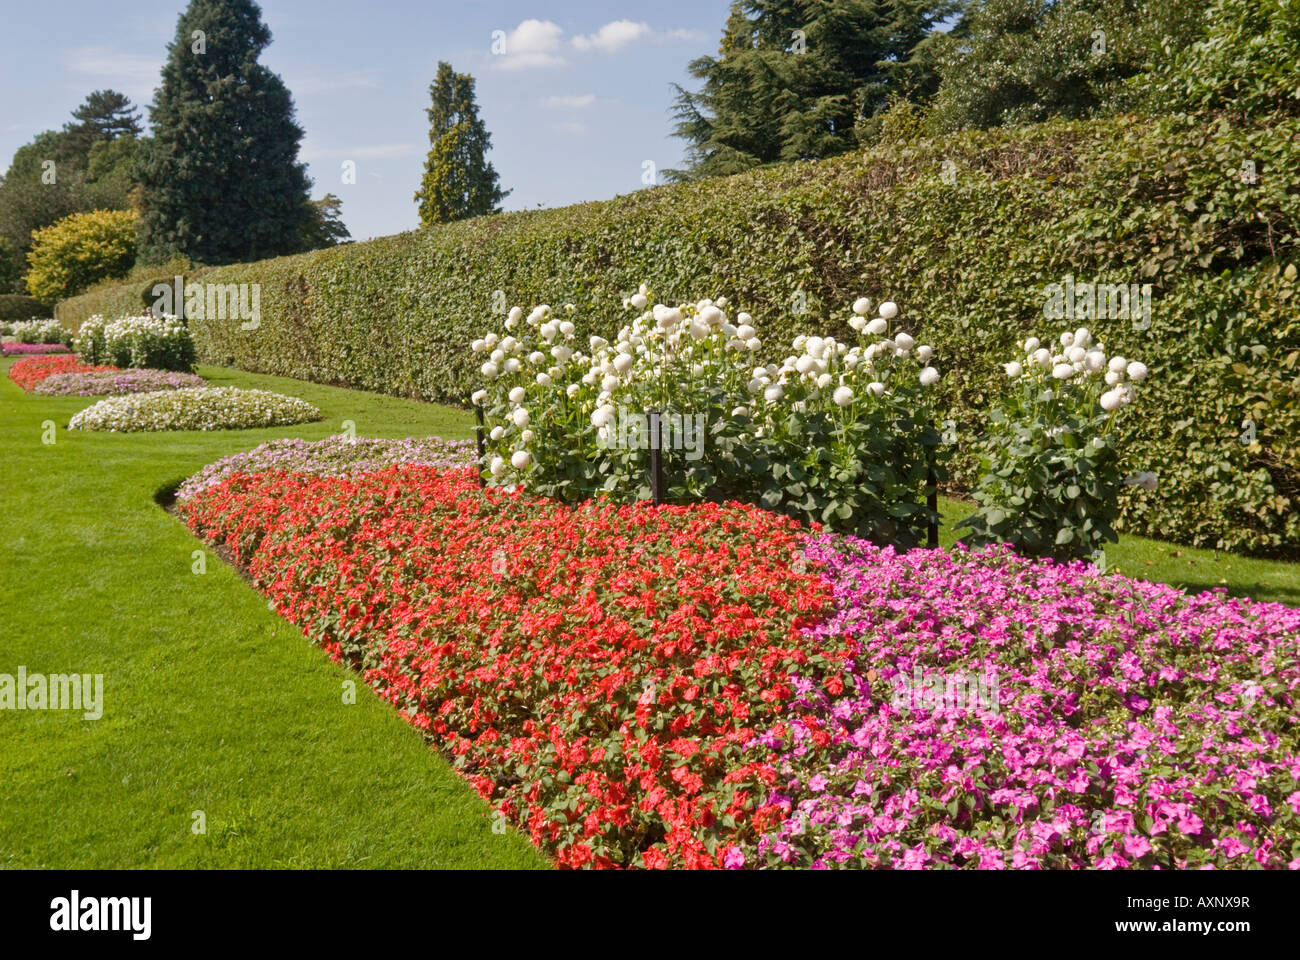 Impatiens-Blumenbeet Wisley RHS Gärten Surrey GB UK Stockfoto